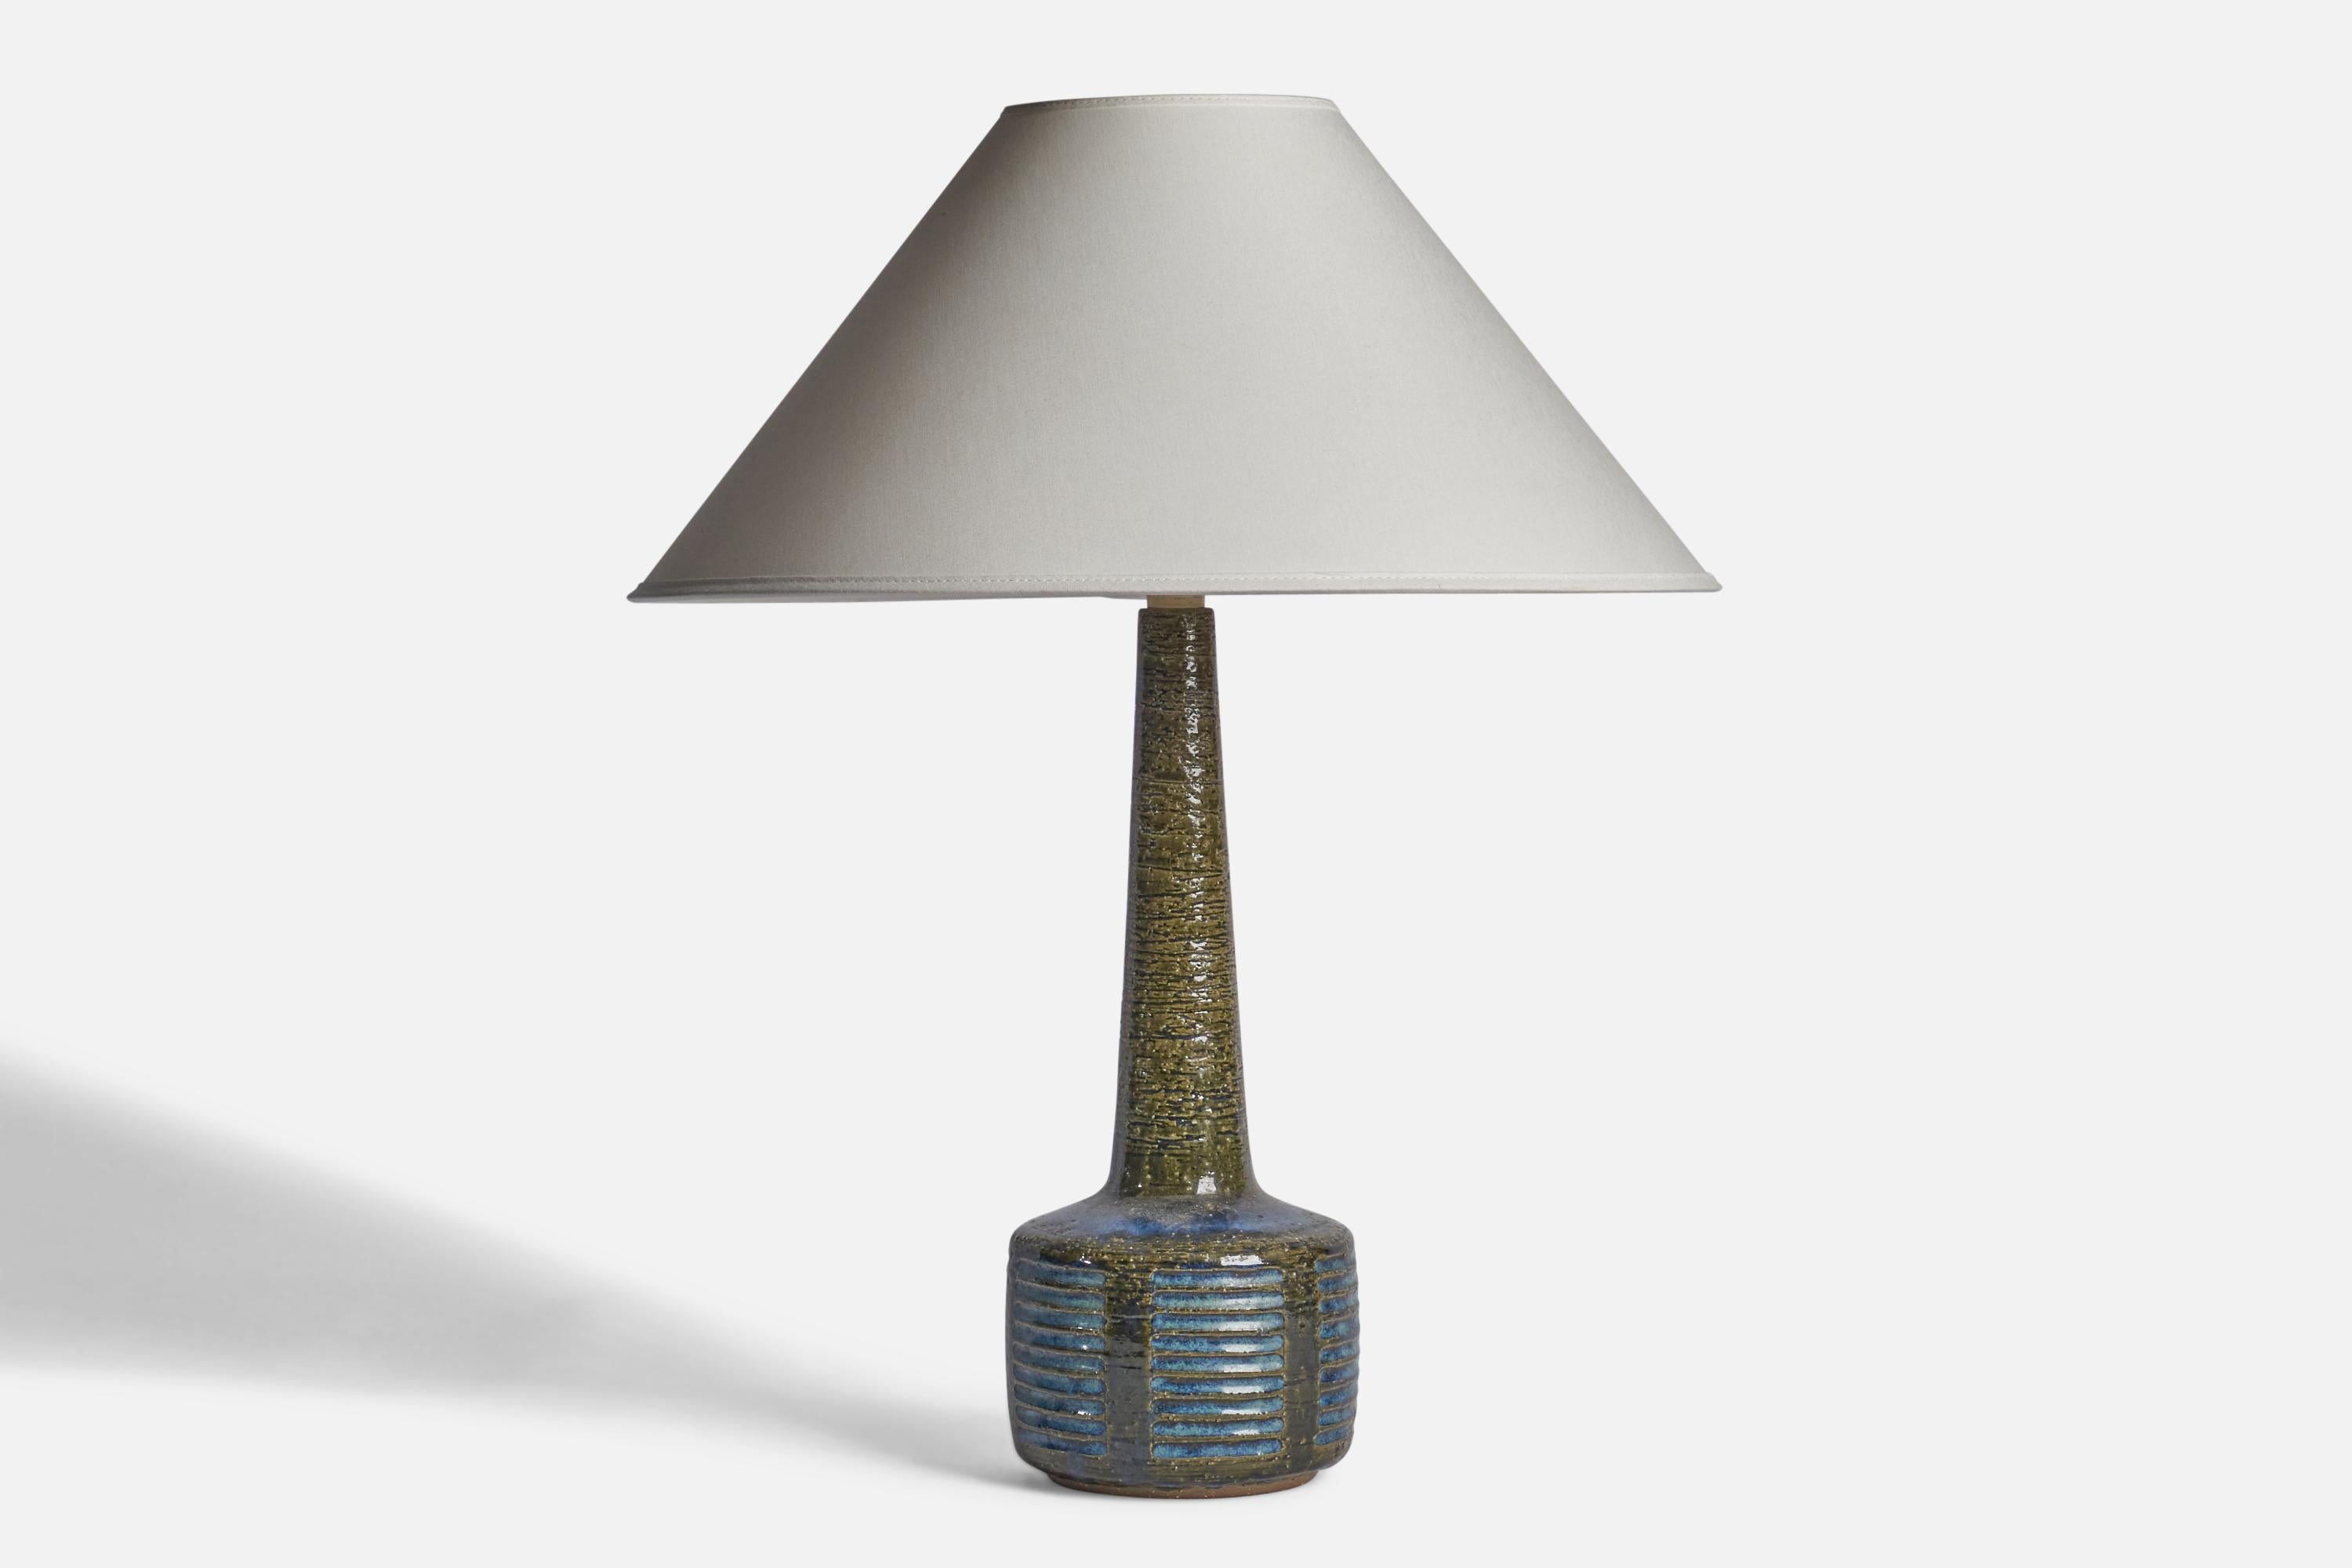 Tischlampe aus blauem und grün glasiertem Steingut, entworfen von Per & Annelise Linneman-Schmidt, hergestellt von Palshus, Dänemark, 1960er Jahre

Abmessungen der Lampe (Zoll): 15,25